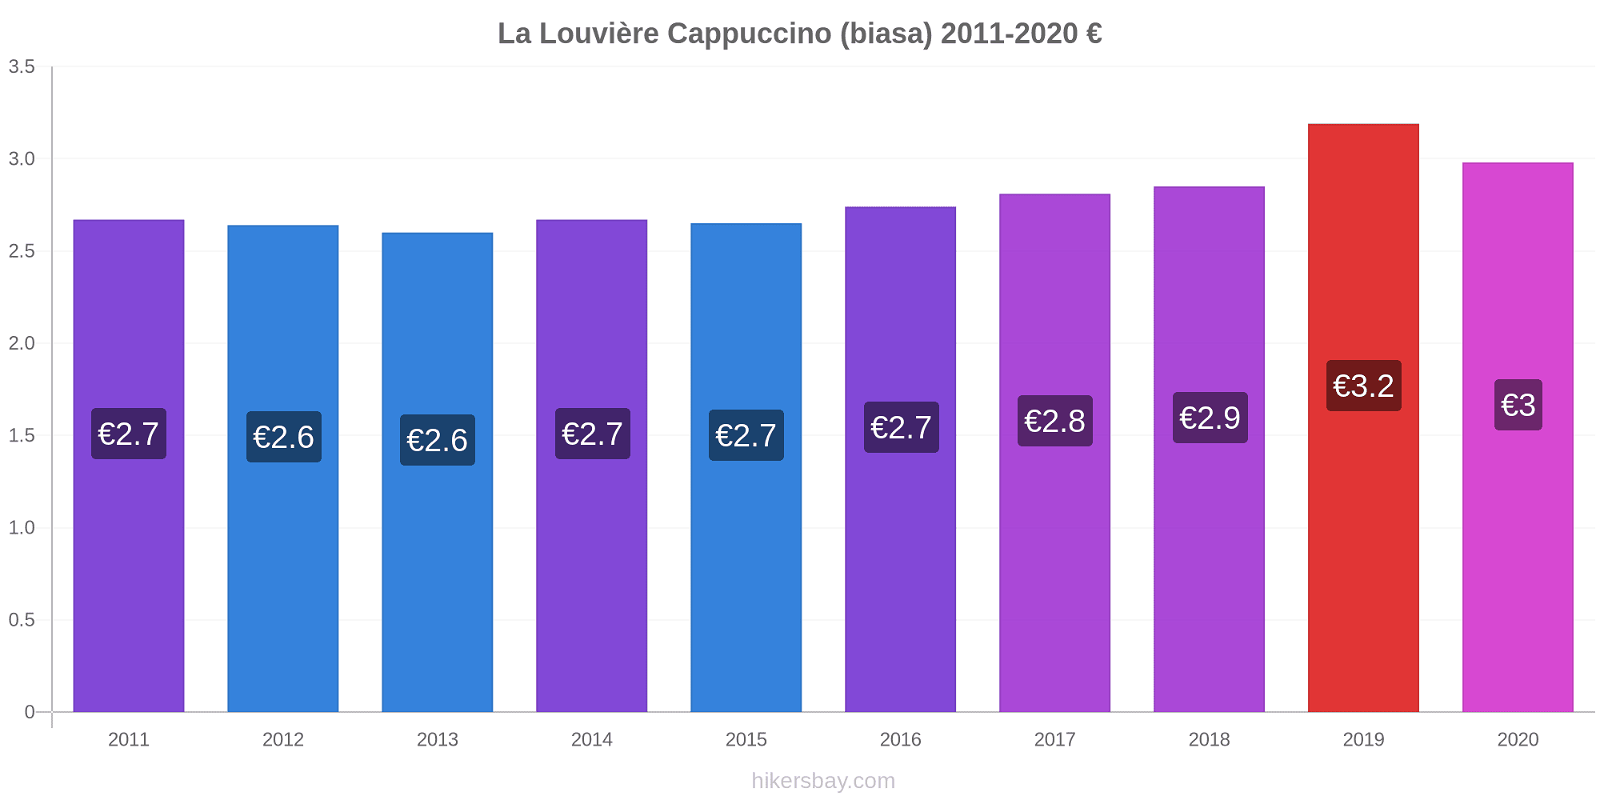 La Louvière perubahan harga Cappuccino (biasa) hikersbay.com